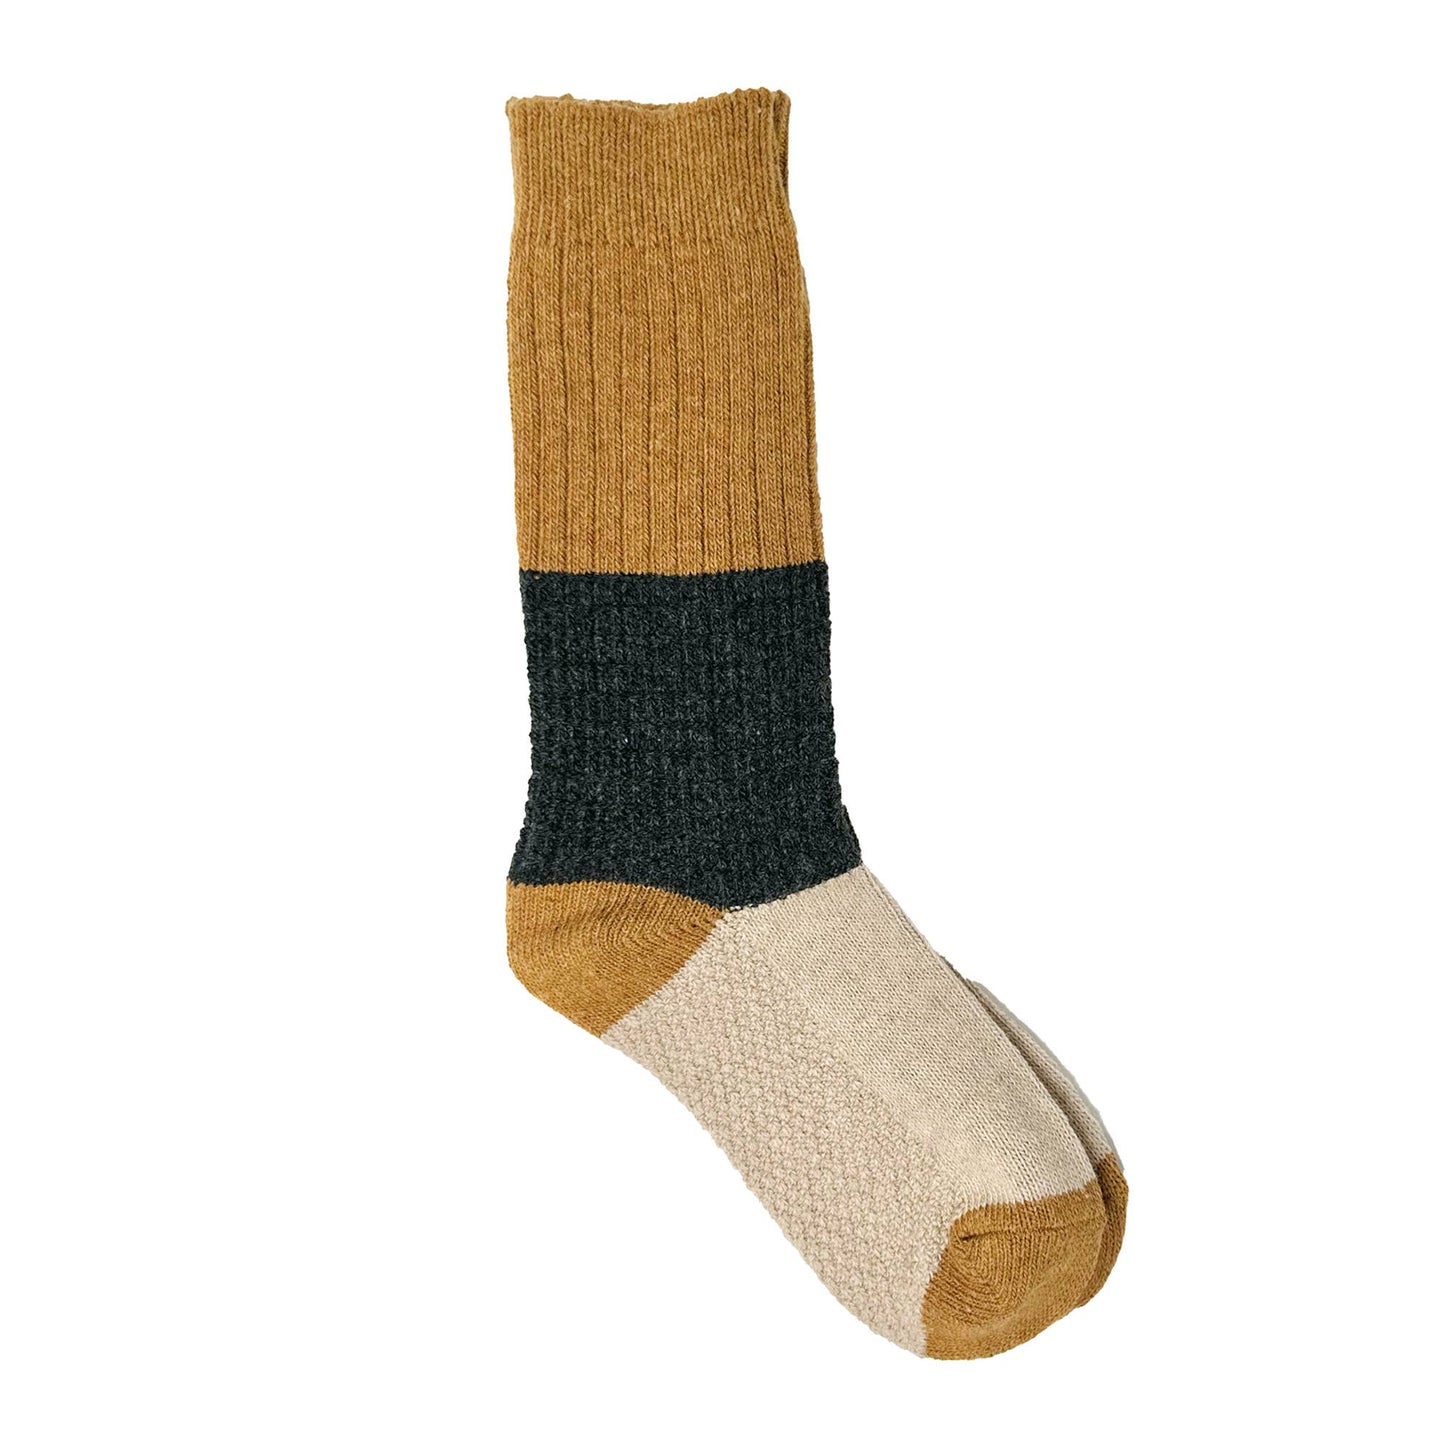 Ryder Color Block Socks: Gray / Green / Mustard